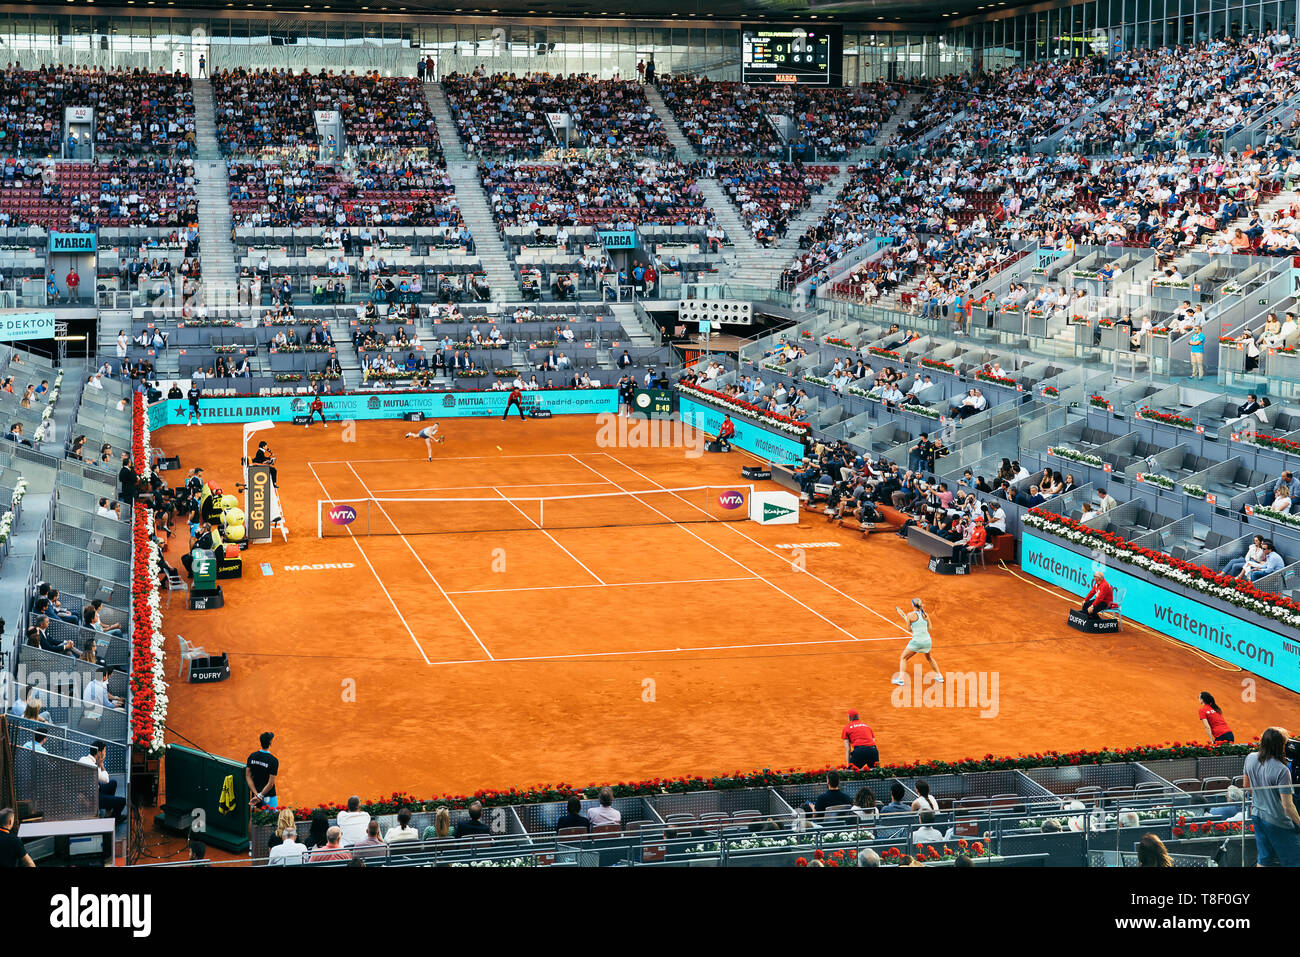 Madrid, España; 11 de mayo de 2019: El centro de tenis Caja Mágica durante  el 2019 Mutua Madrid Open WTA Premier obligatorio, torneo de tenis de la  final femenina Bert Fotografía de stock - Alamy